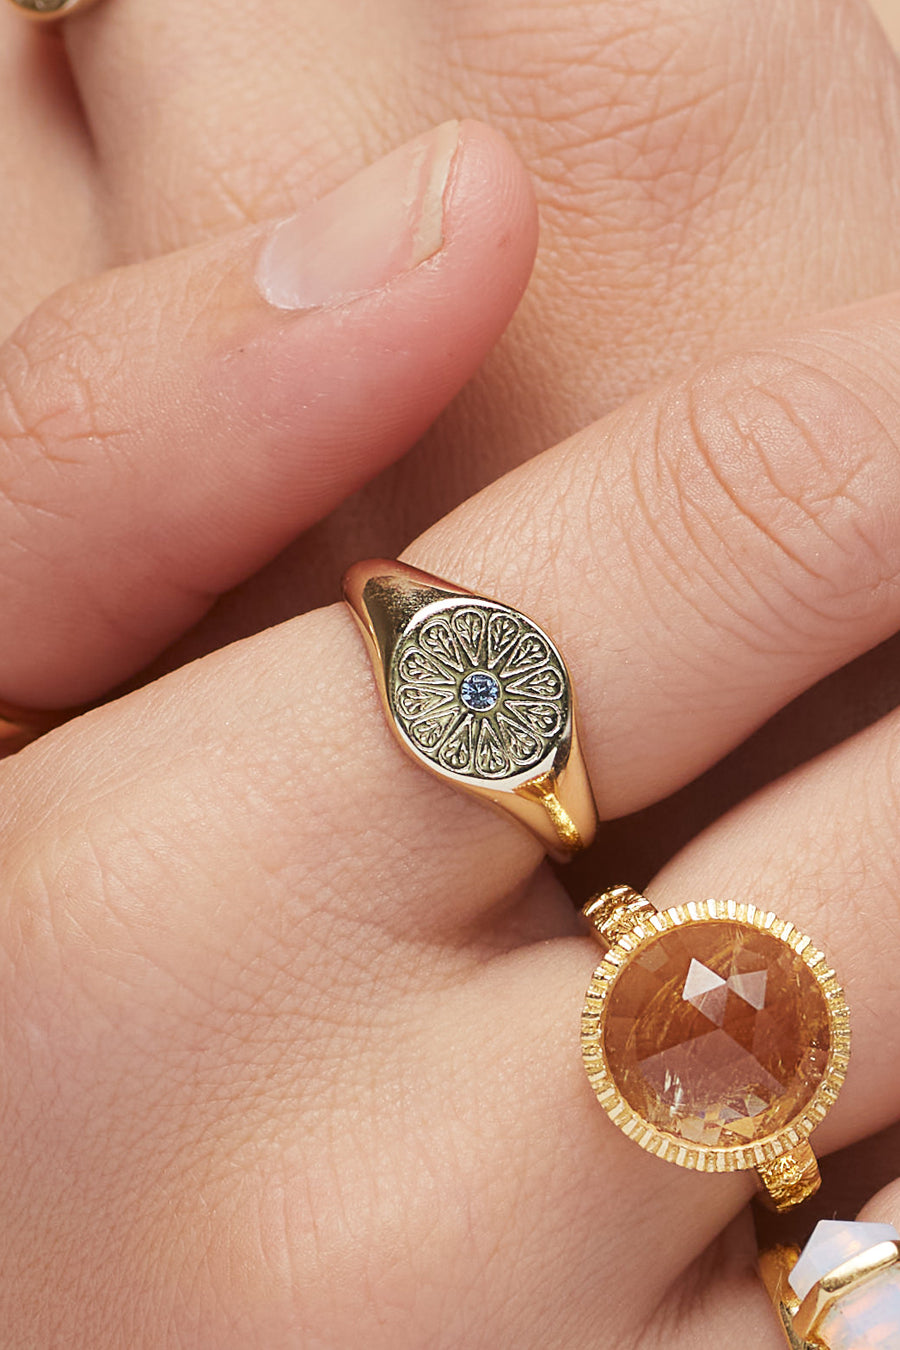 March Aquamarine Birthstone Ring worn on finger